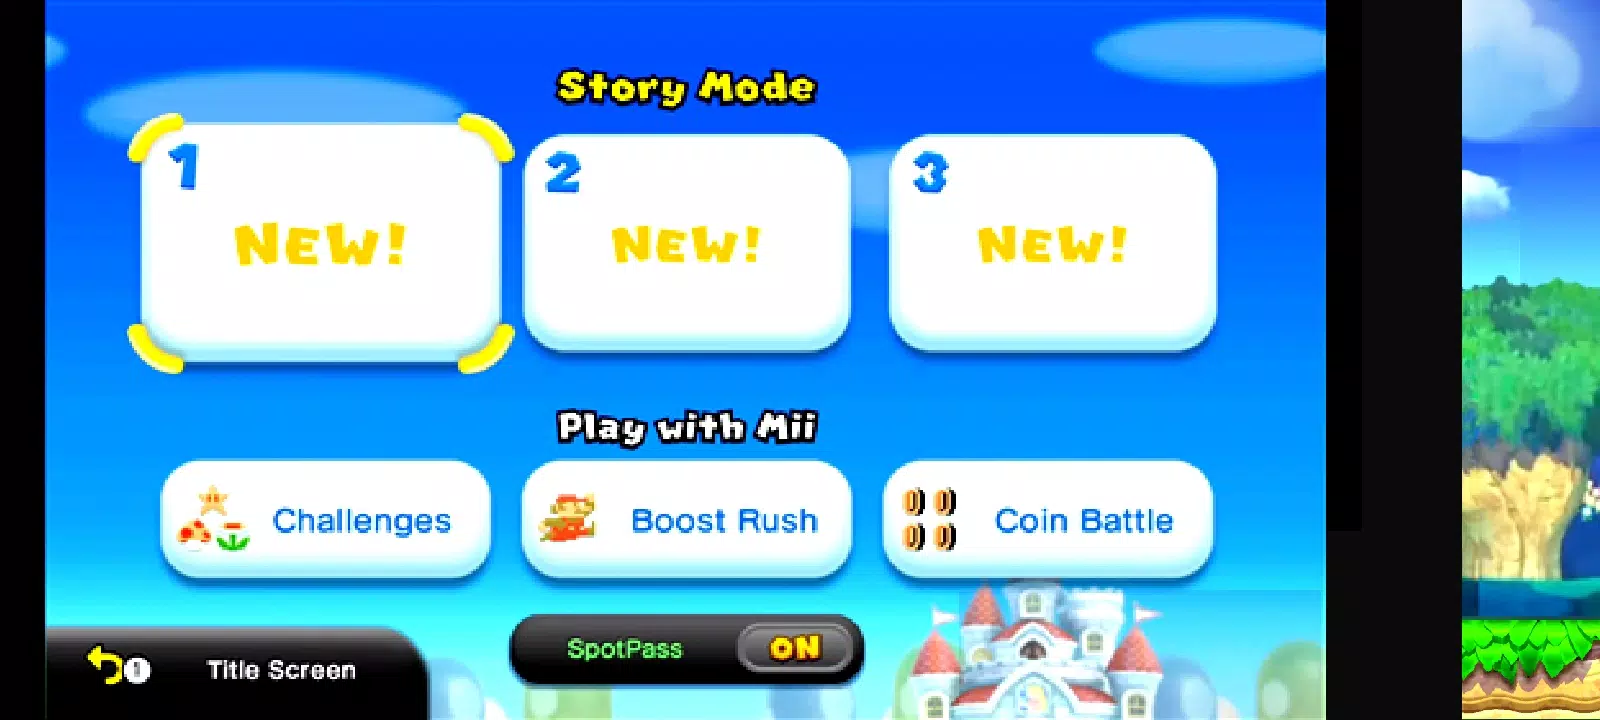 New Super Mario Bros U APK para Android - Download